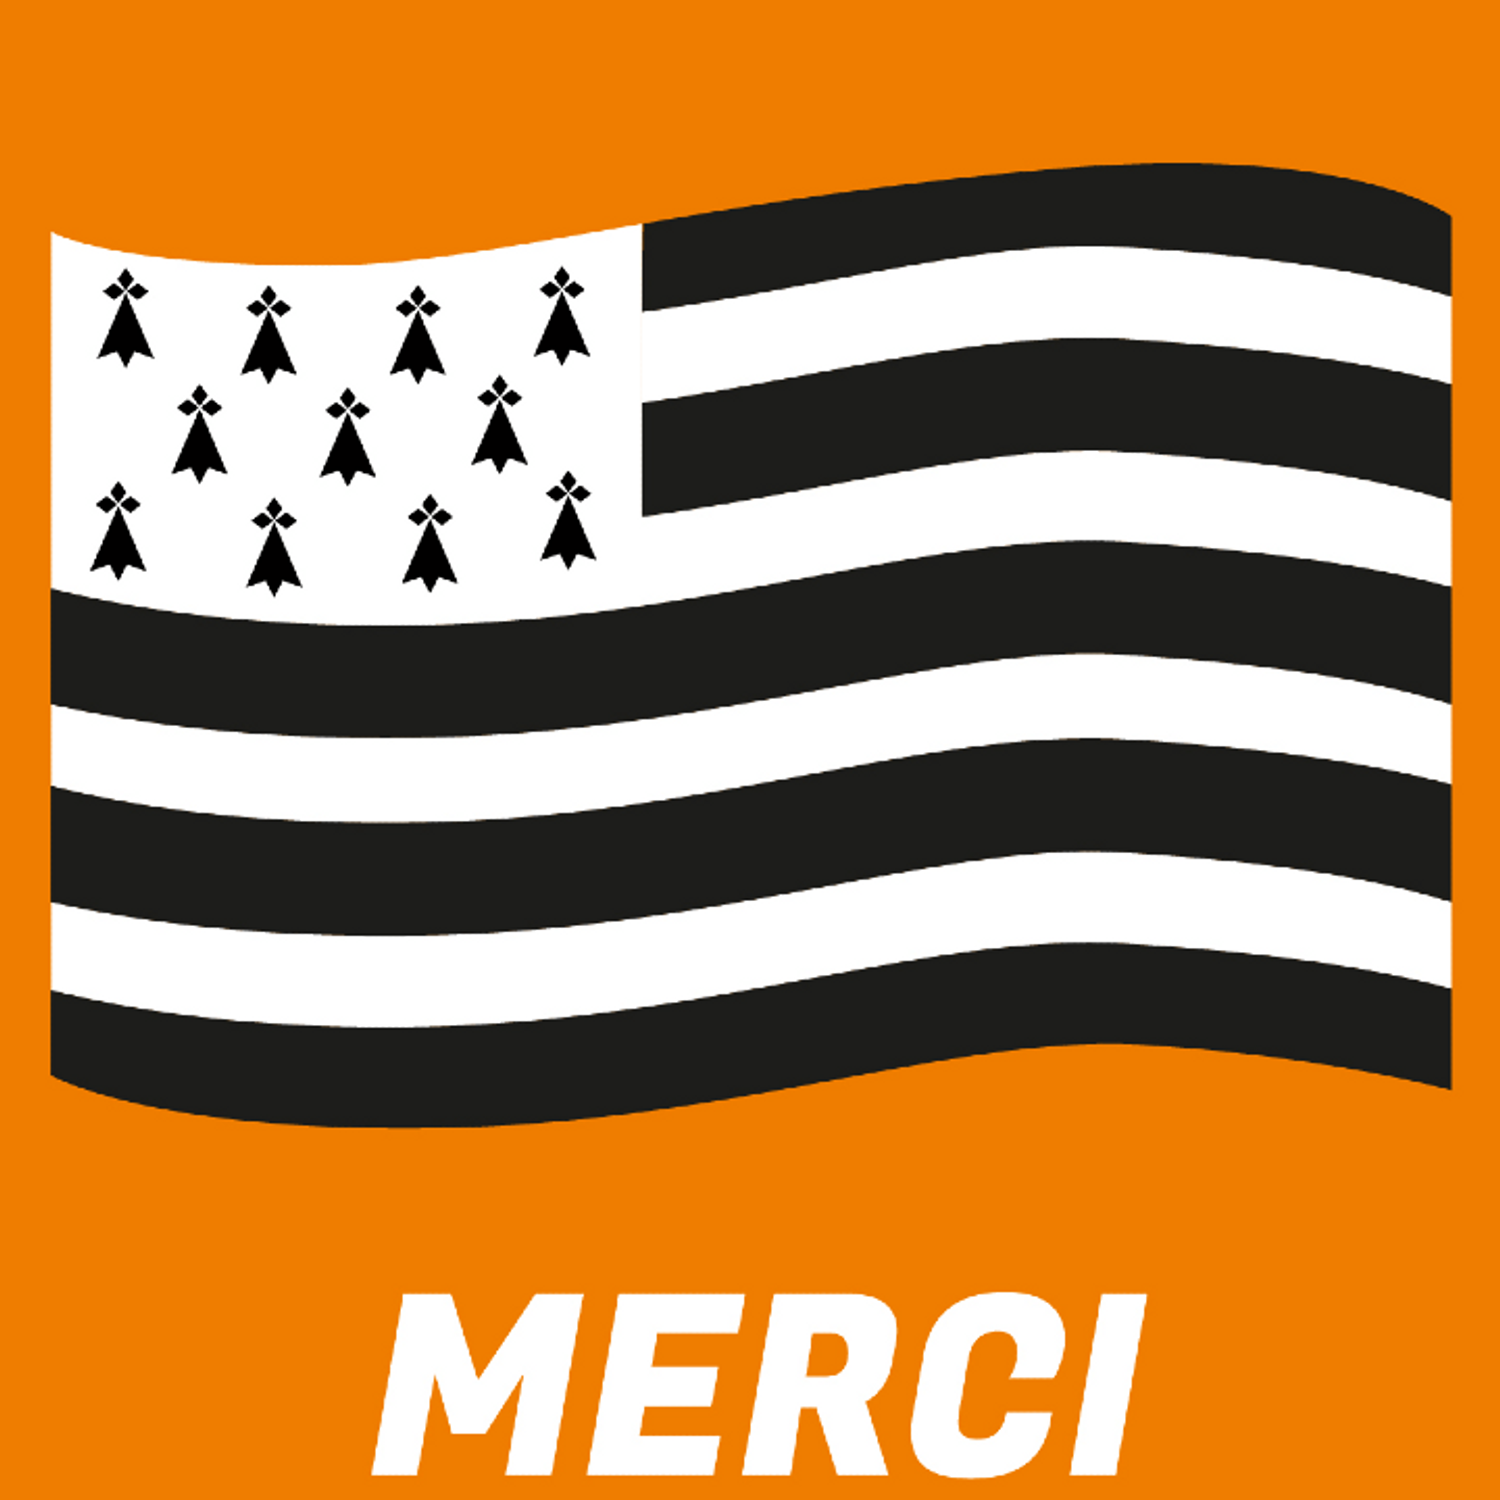 51 149 émojis drapeaux bretons ont été générés en 10 jours sur...